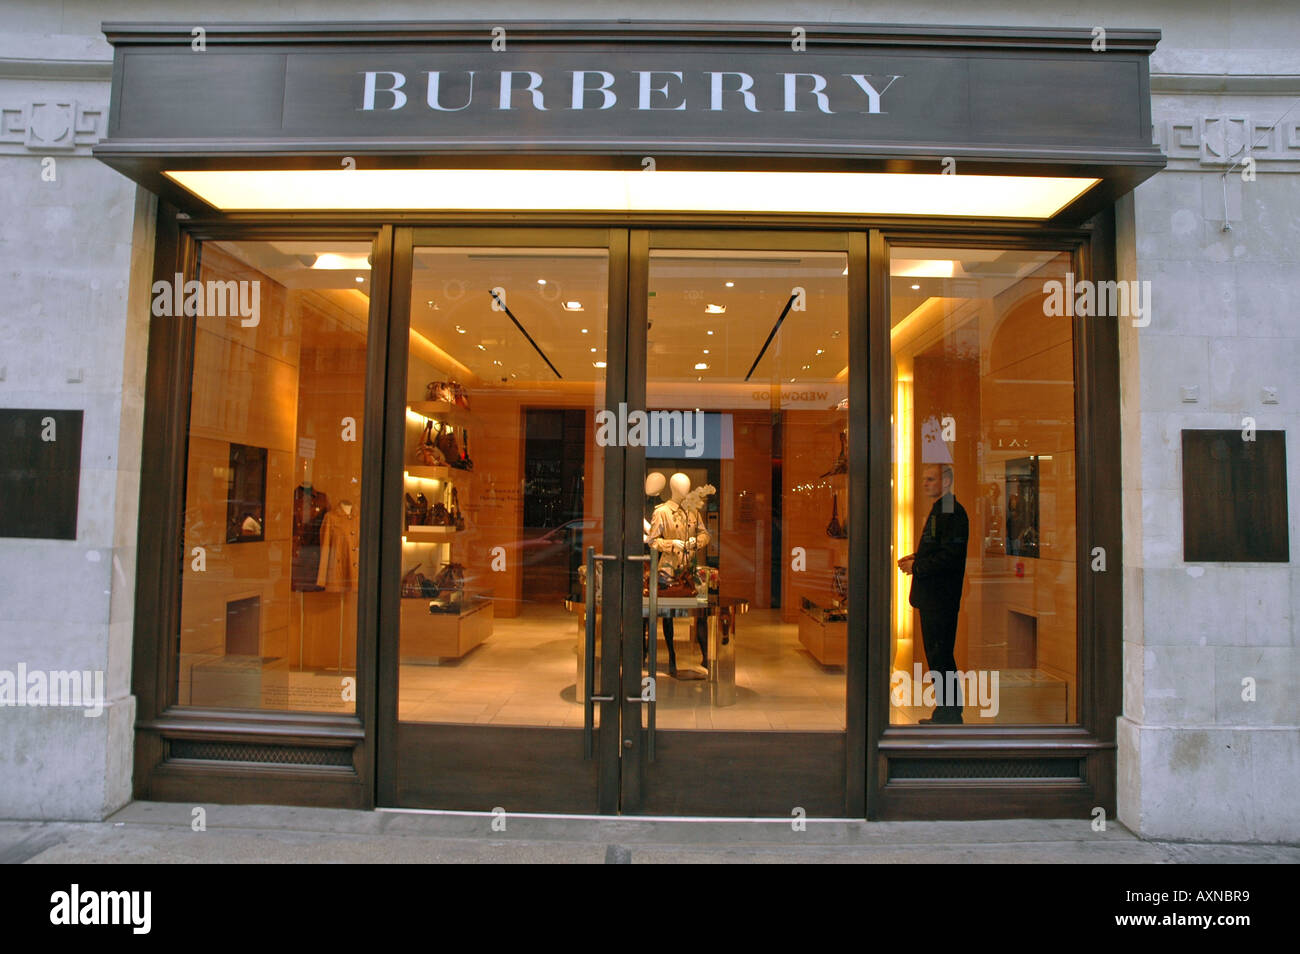 burberry shop online uk